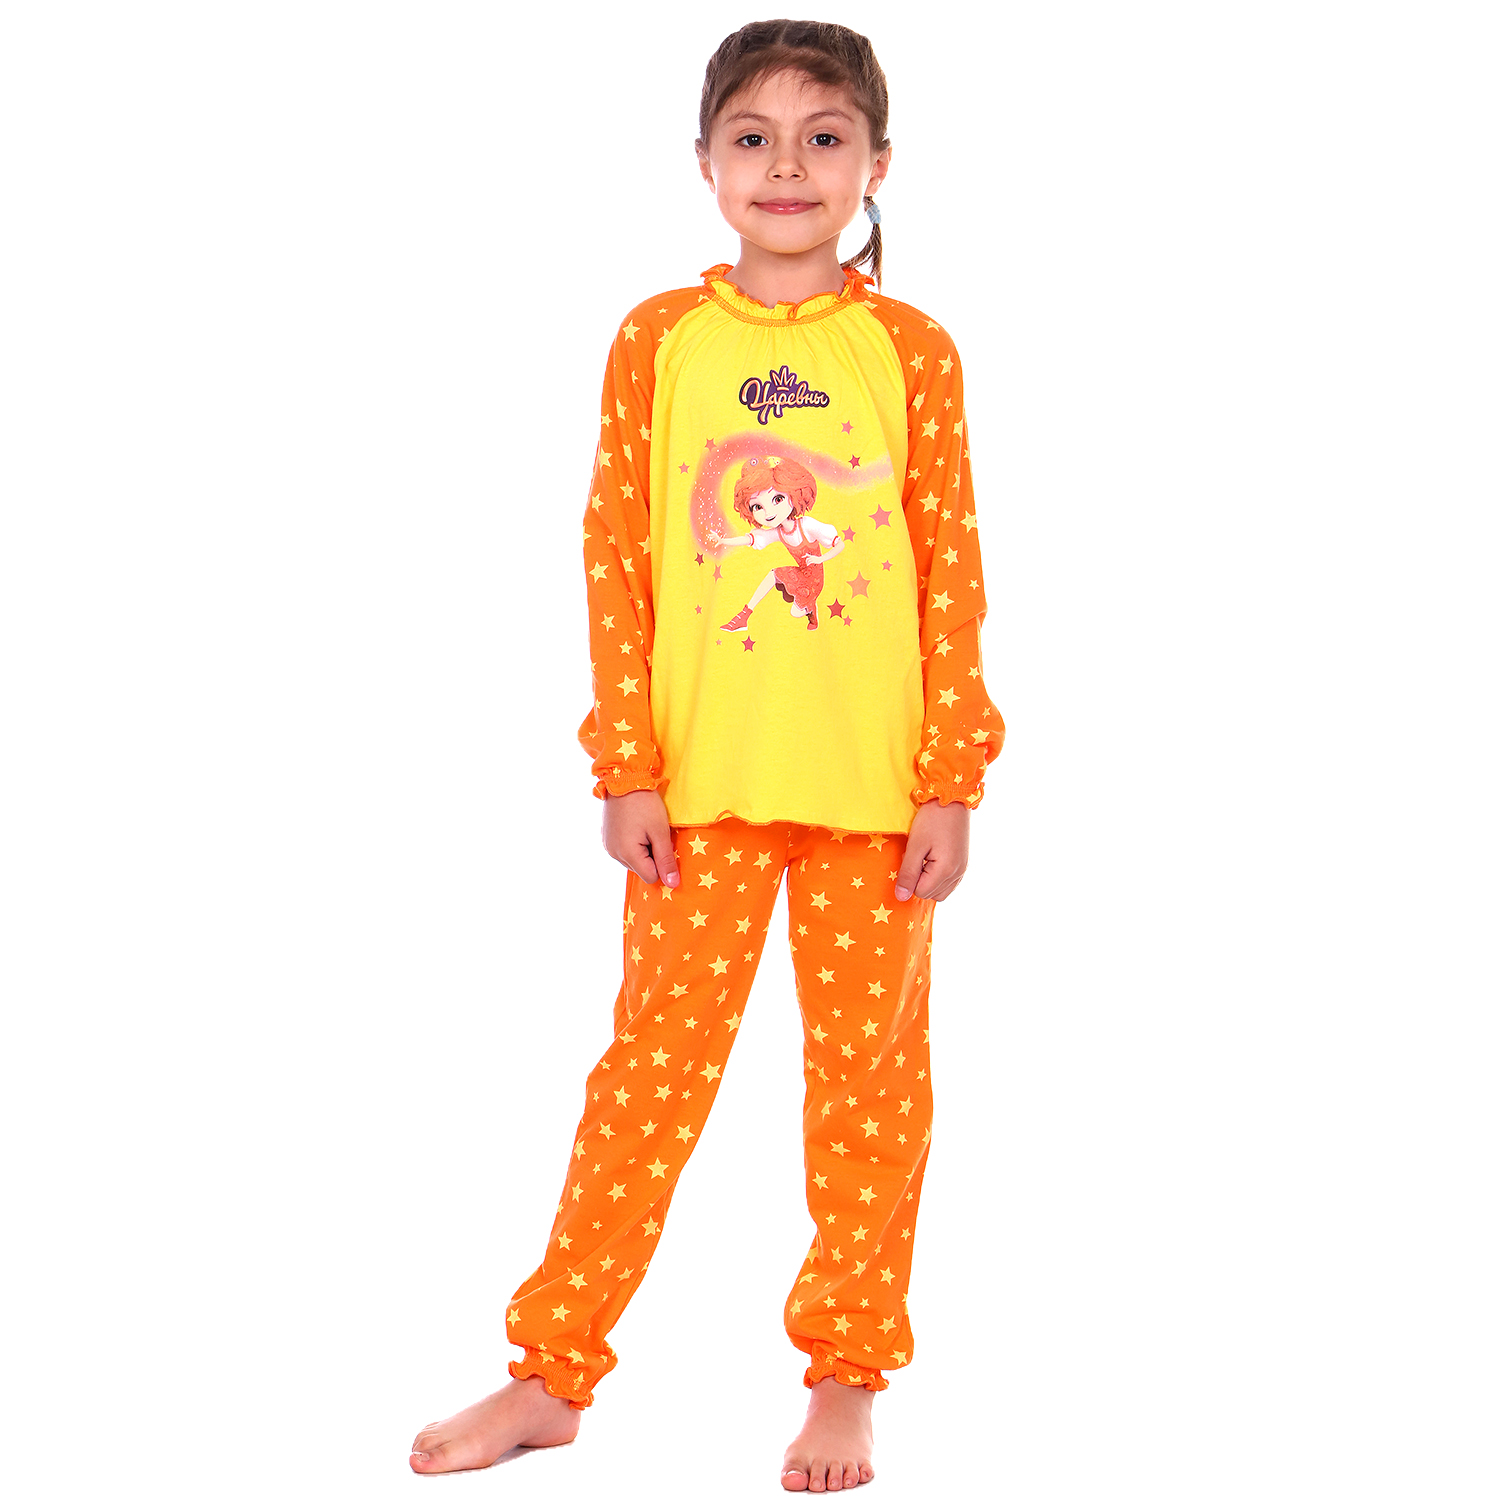 Пижама Детская Одежда S0413К/желтый_оранж - фото 1